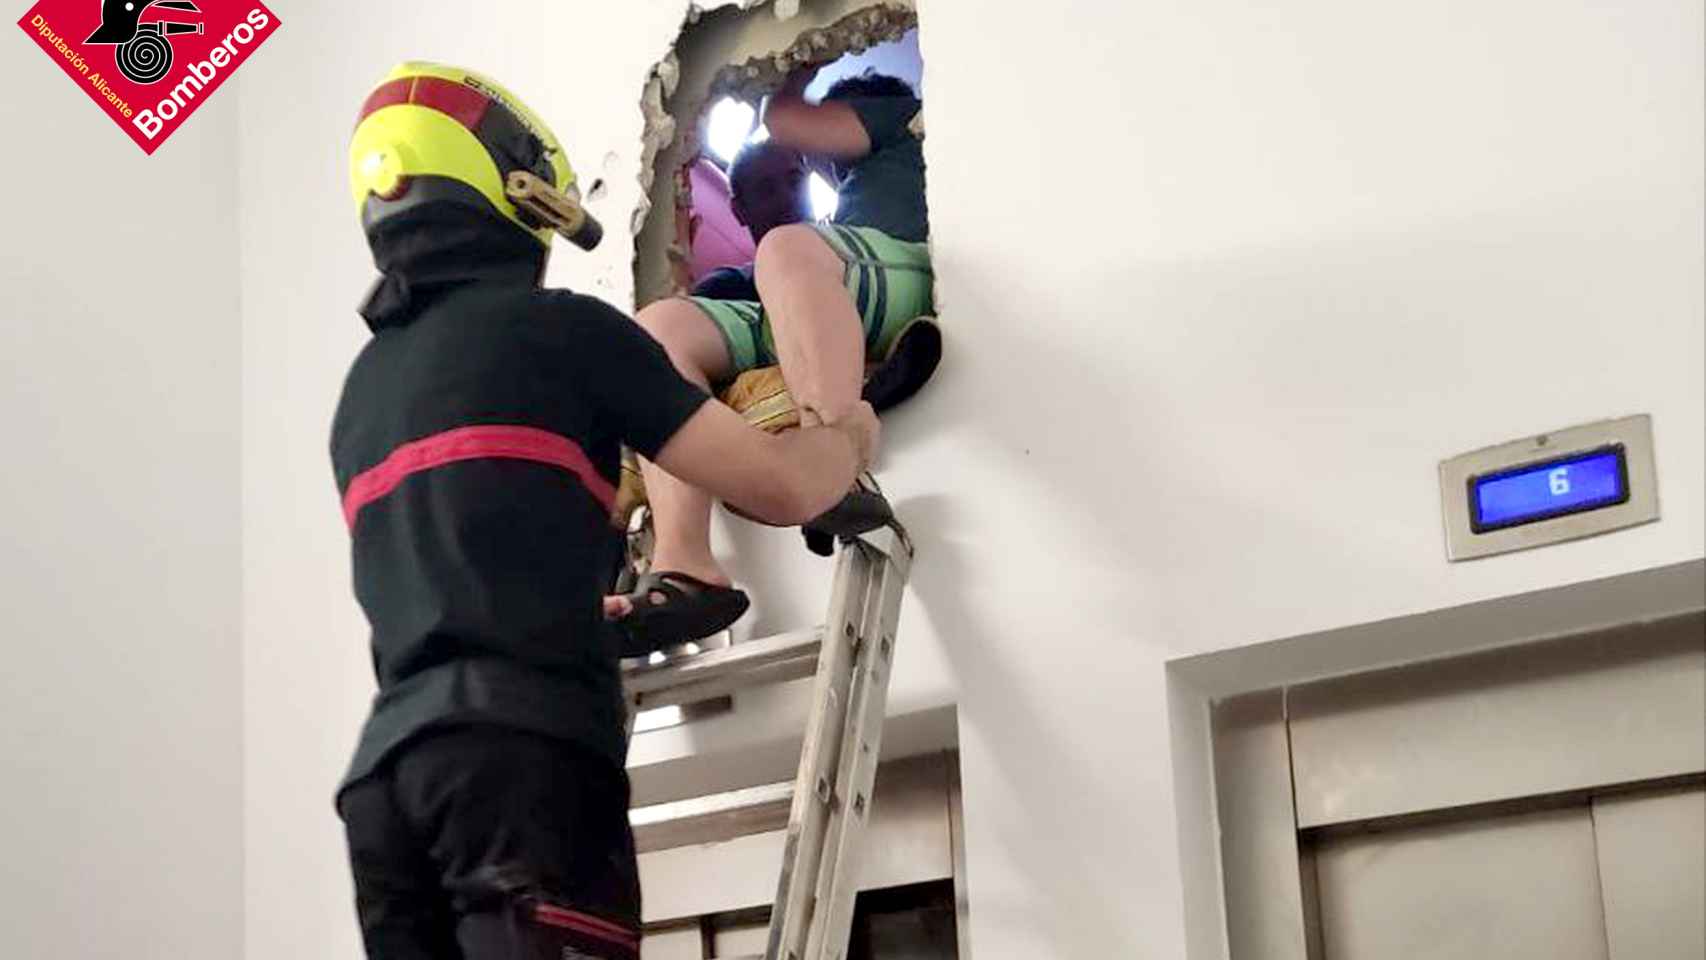 Un bombero saca a uno de los jóvenes atrapados dentro del ascensor en Benidorm.